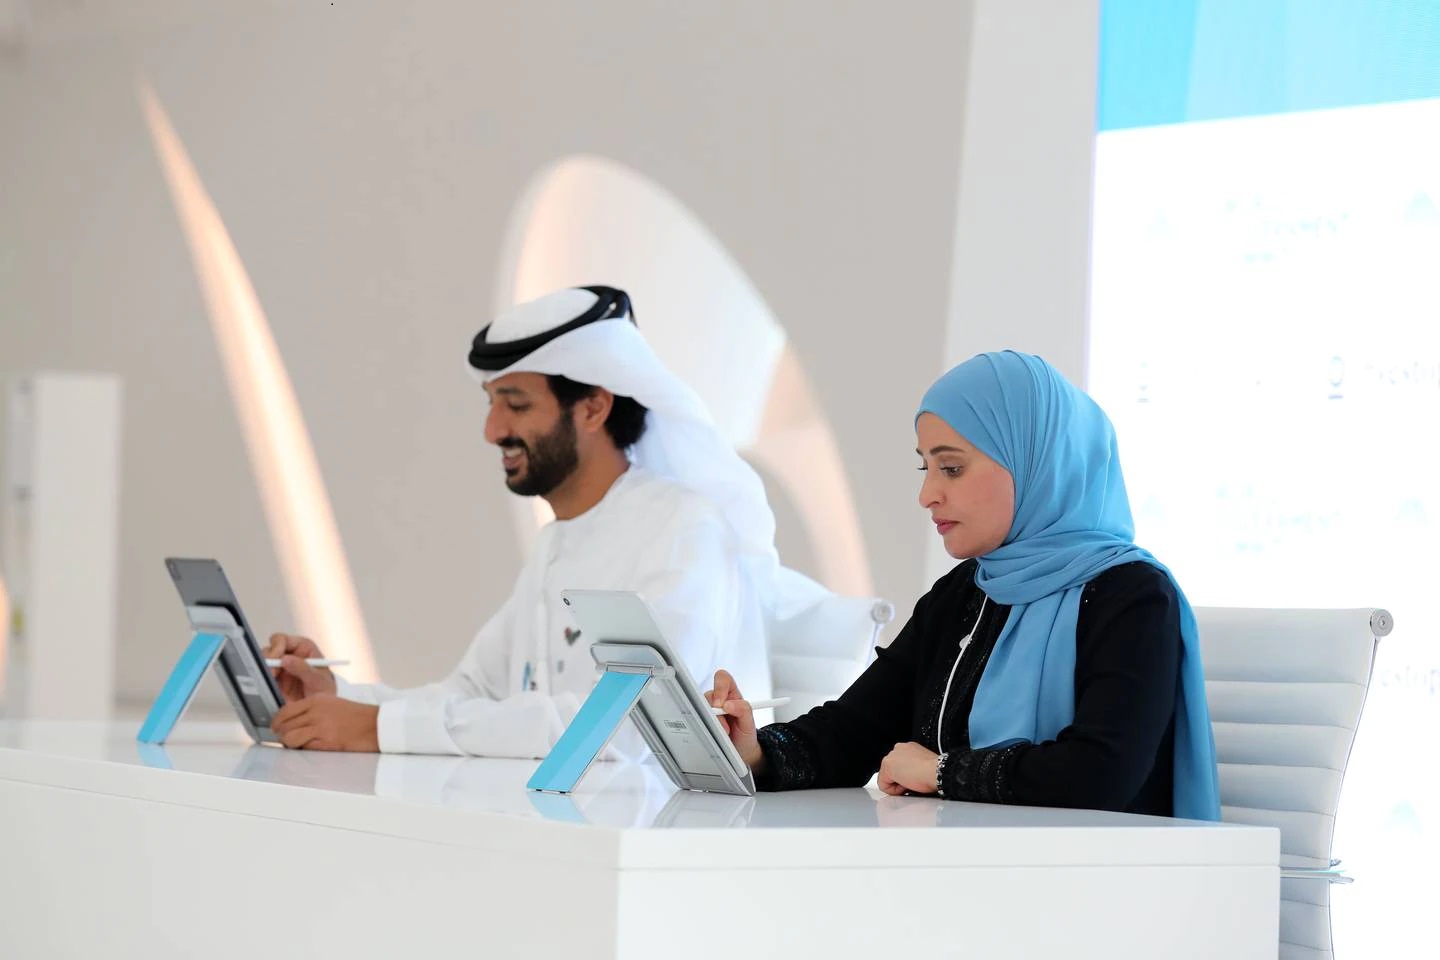 UAE đã ưu tiên khuyến khích nhiều nữ lãnh đạo hơn. Quốc gia